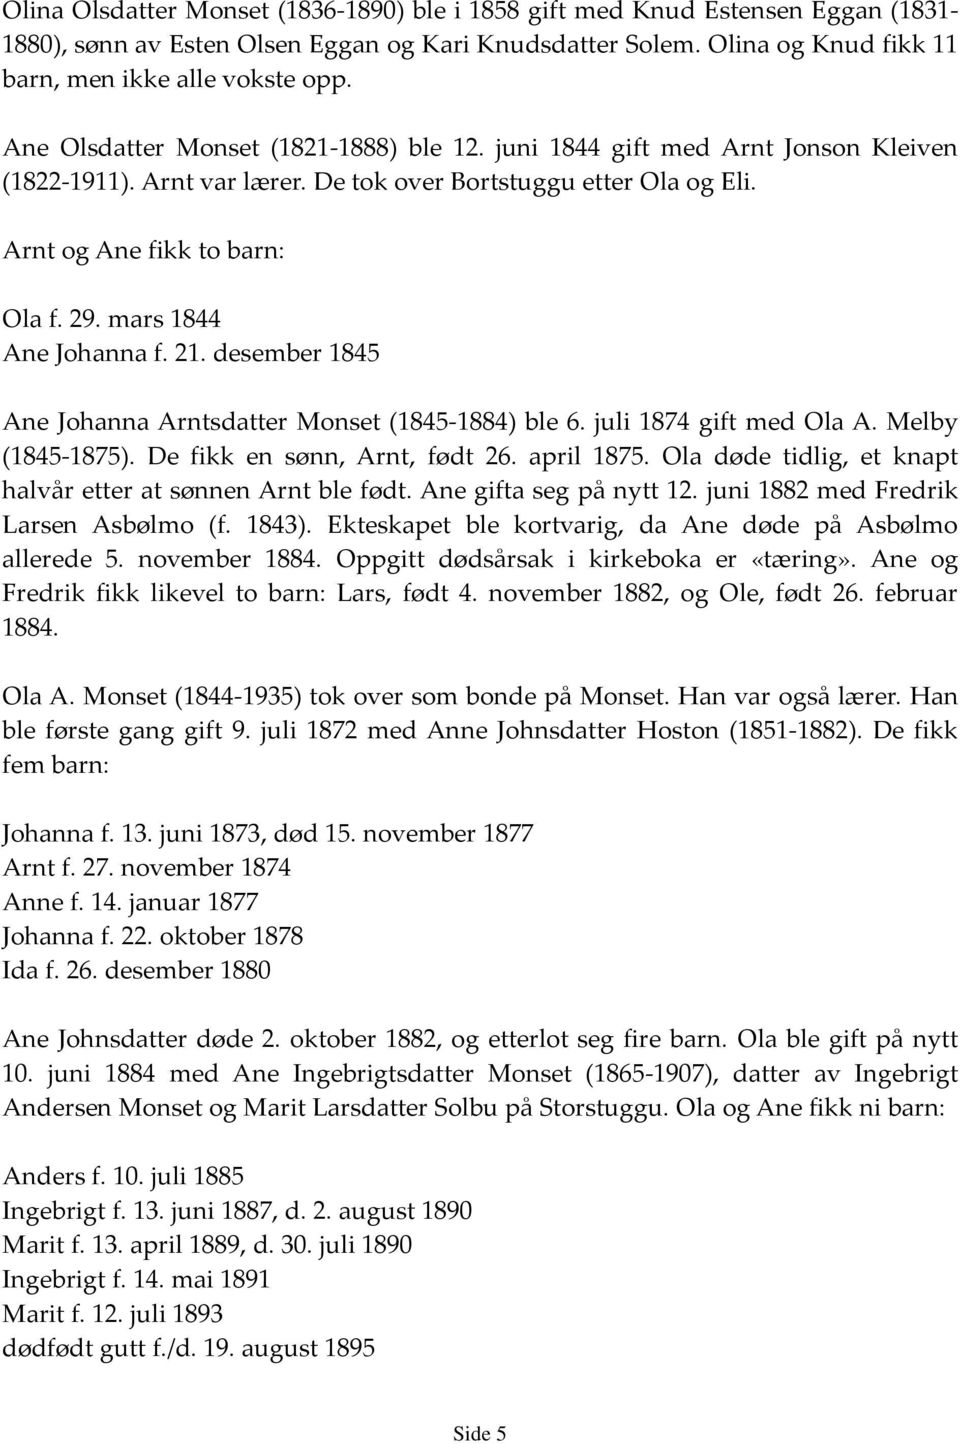 mars 1844 Ane Johanna f. 21. desember 1845 Ane Johanna Arntsdatter Monset (1845-1884) ble 6. juli 1874 gift med Ola A. Melby (1845-1875). De fikk en sønn, Arnt, født 26. april 1875.